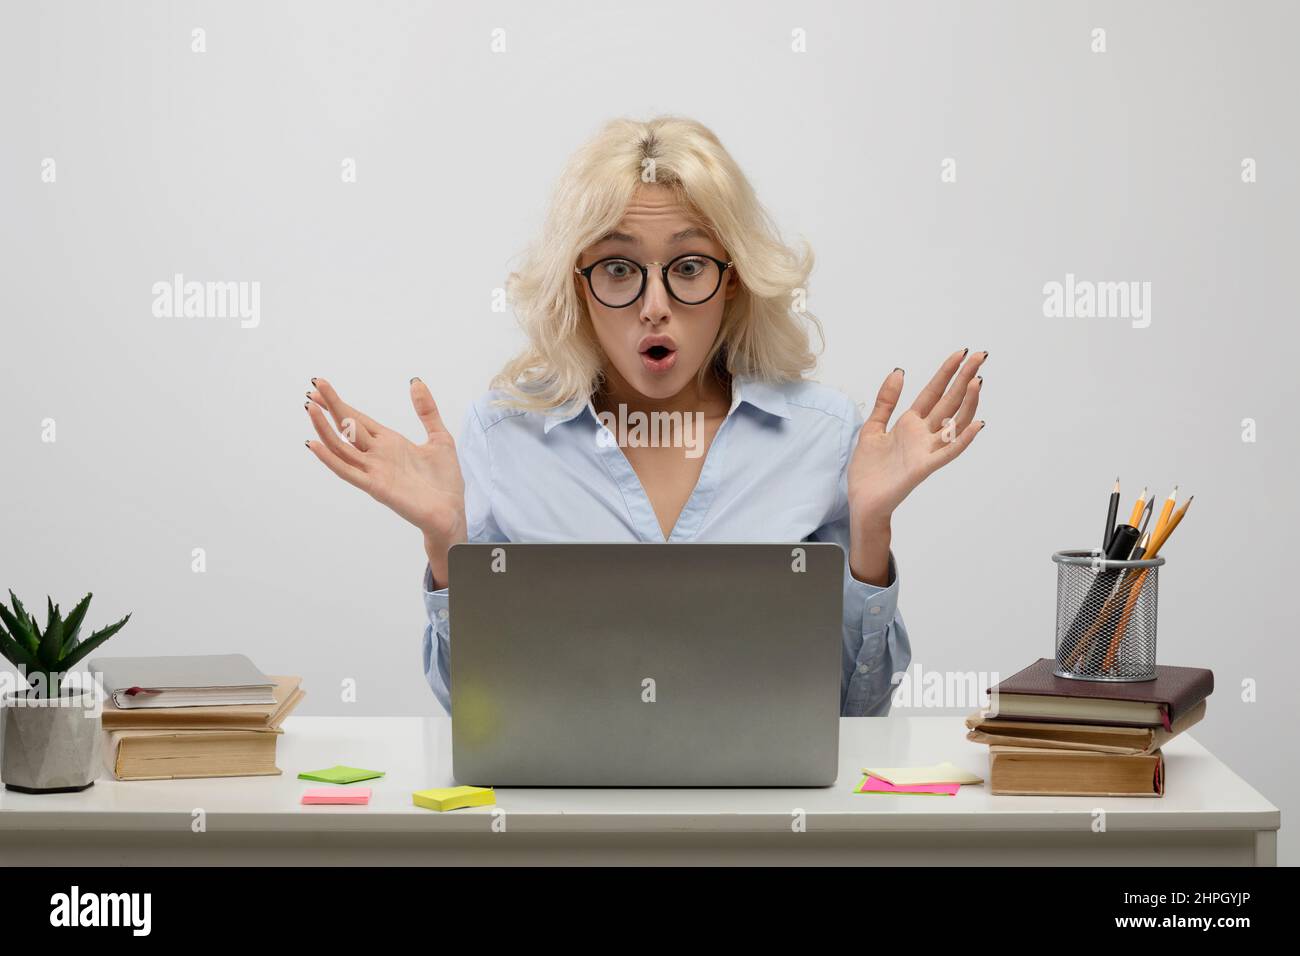 Femme d'affaires émotive regardant l'écran d'un ordinateur portable en état de choc, employée de bureau assise sur le lieu de travail, arrière-plan léger Banque D'Images